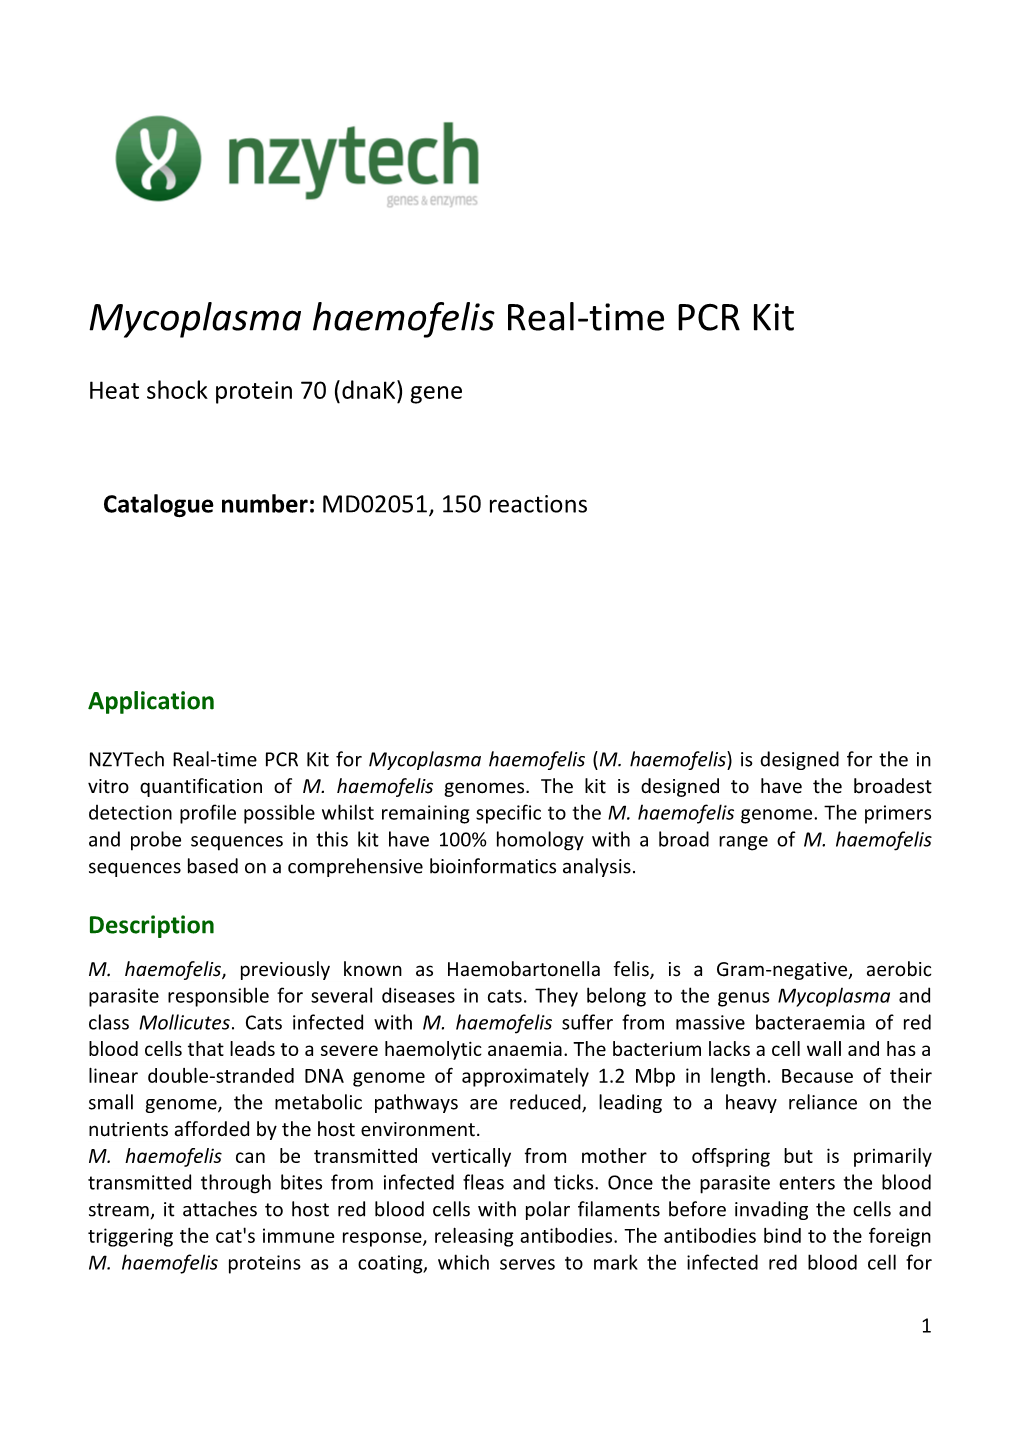 Mycoplasma Haemofelis Real-Time PCR Kit